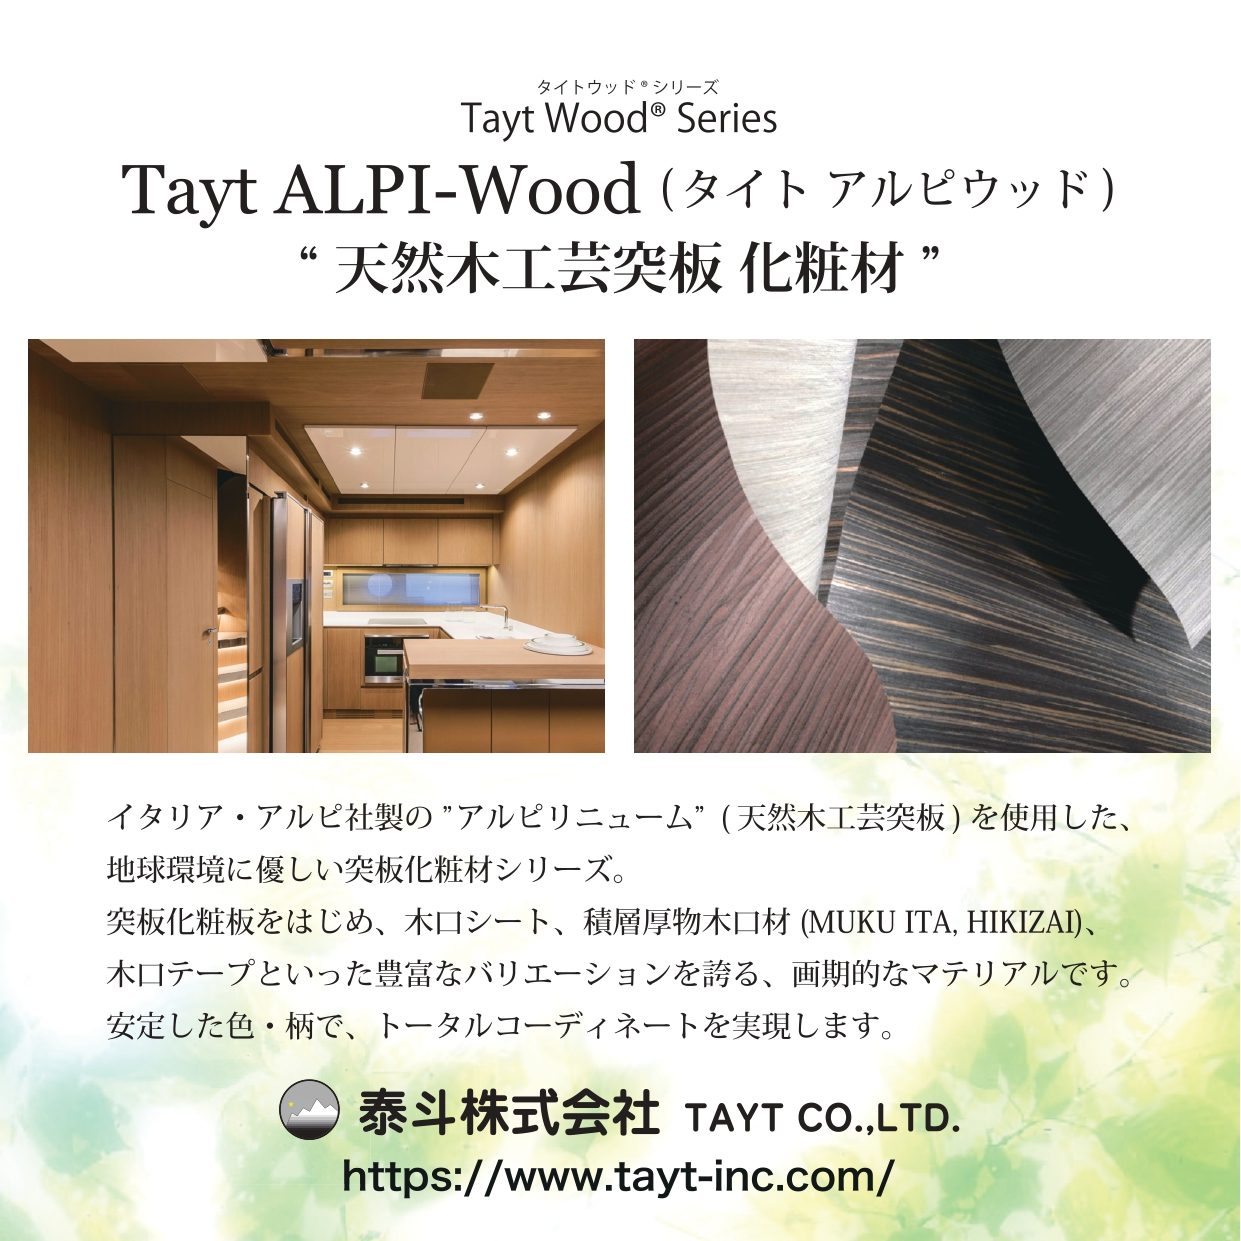 T-1032-0 天然木工芸突板化粧板 タイト アルピウッド イタリアンウォールナット柾 4.0mm×3尺×8尺 クリアー